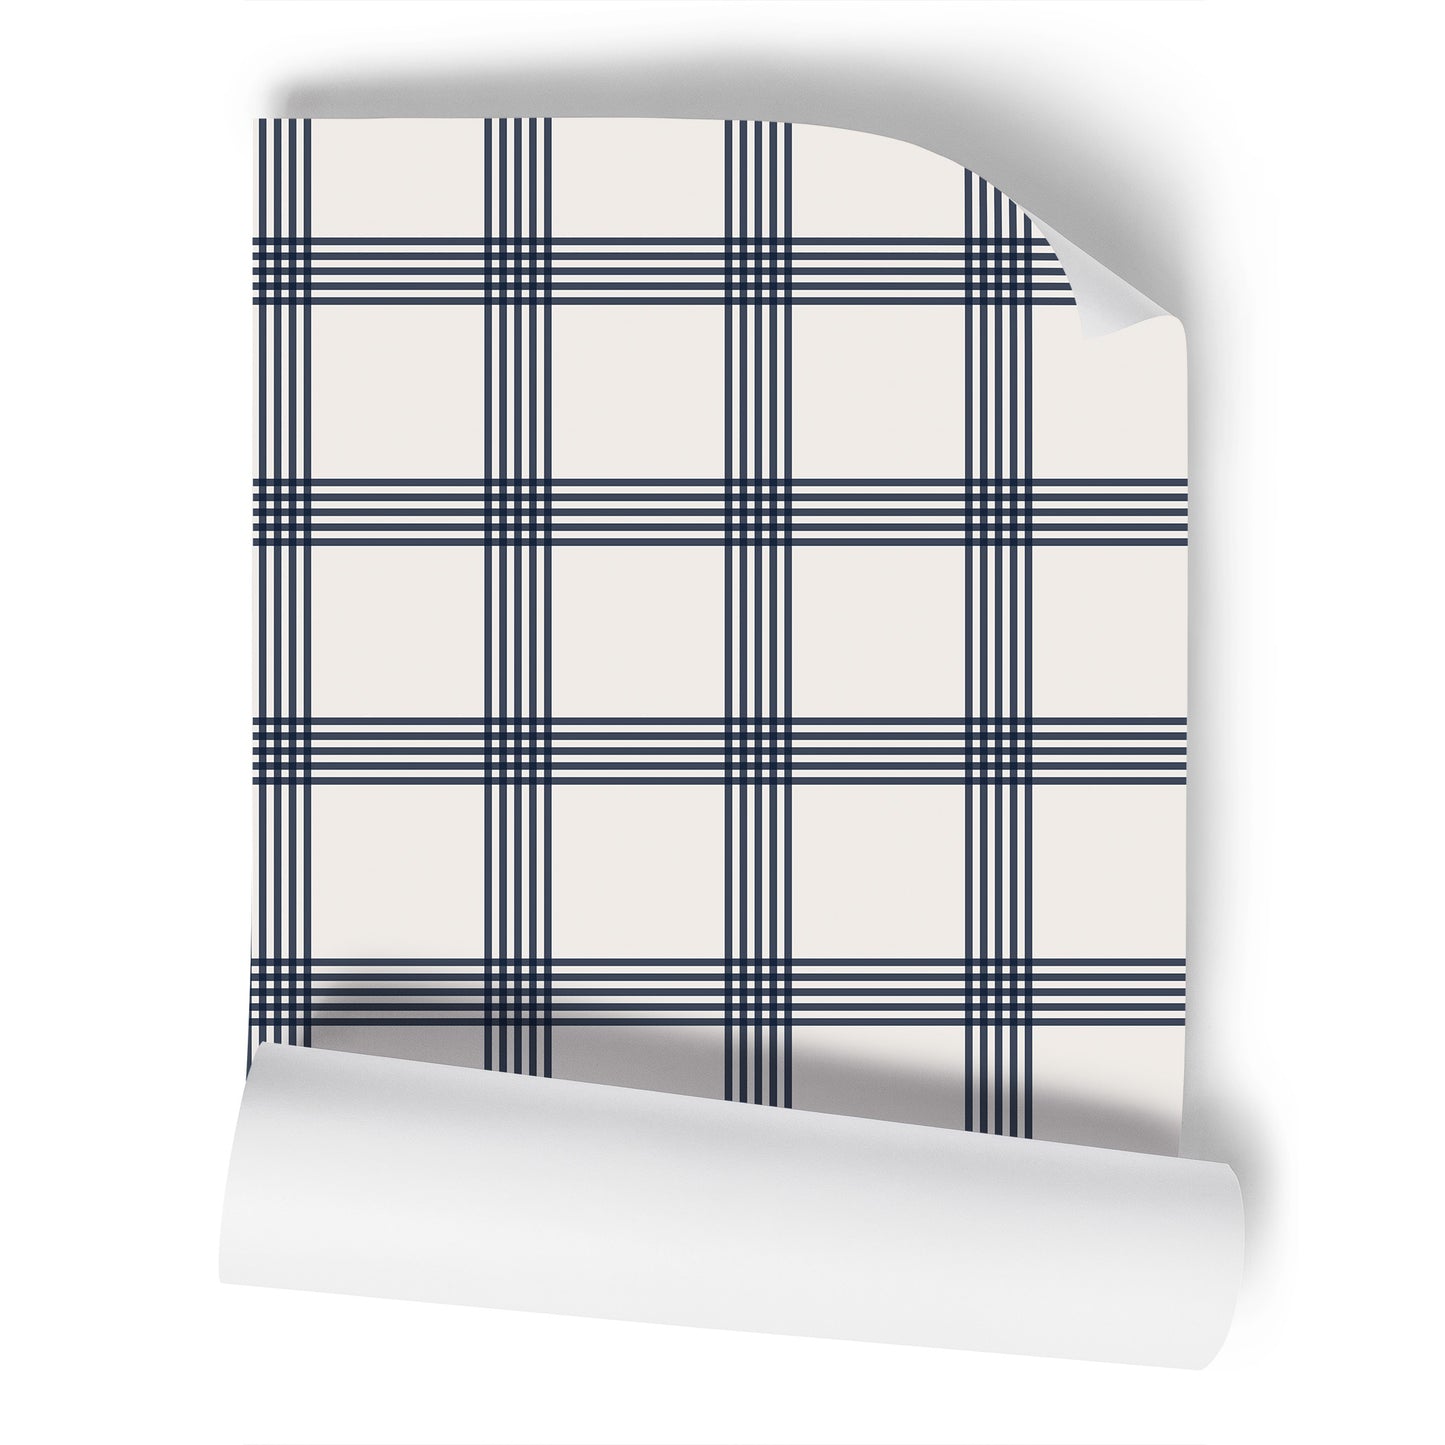 Plaid Stripes Navy Geometric Wallpaper